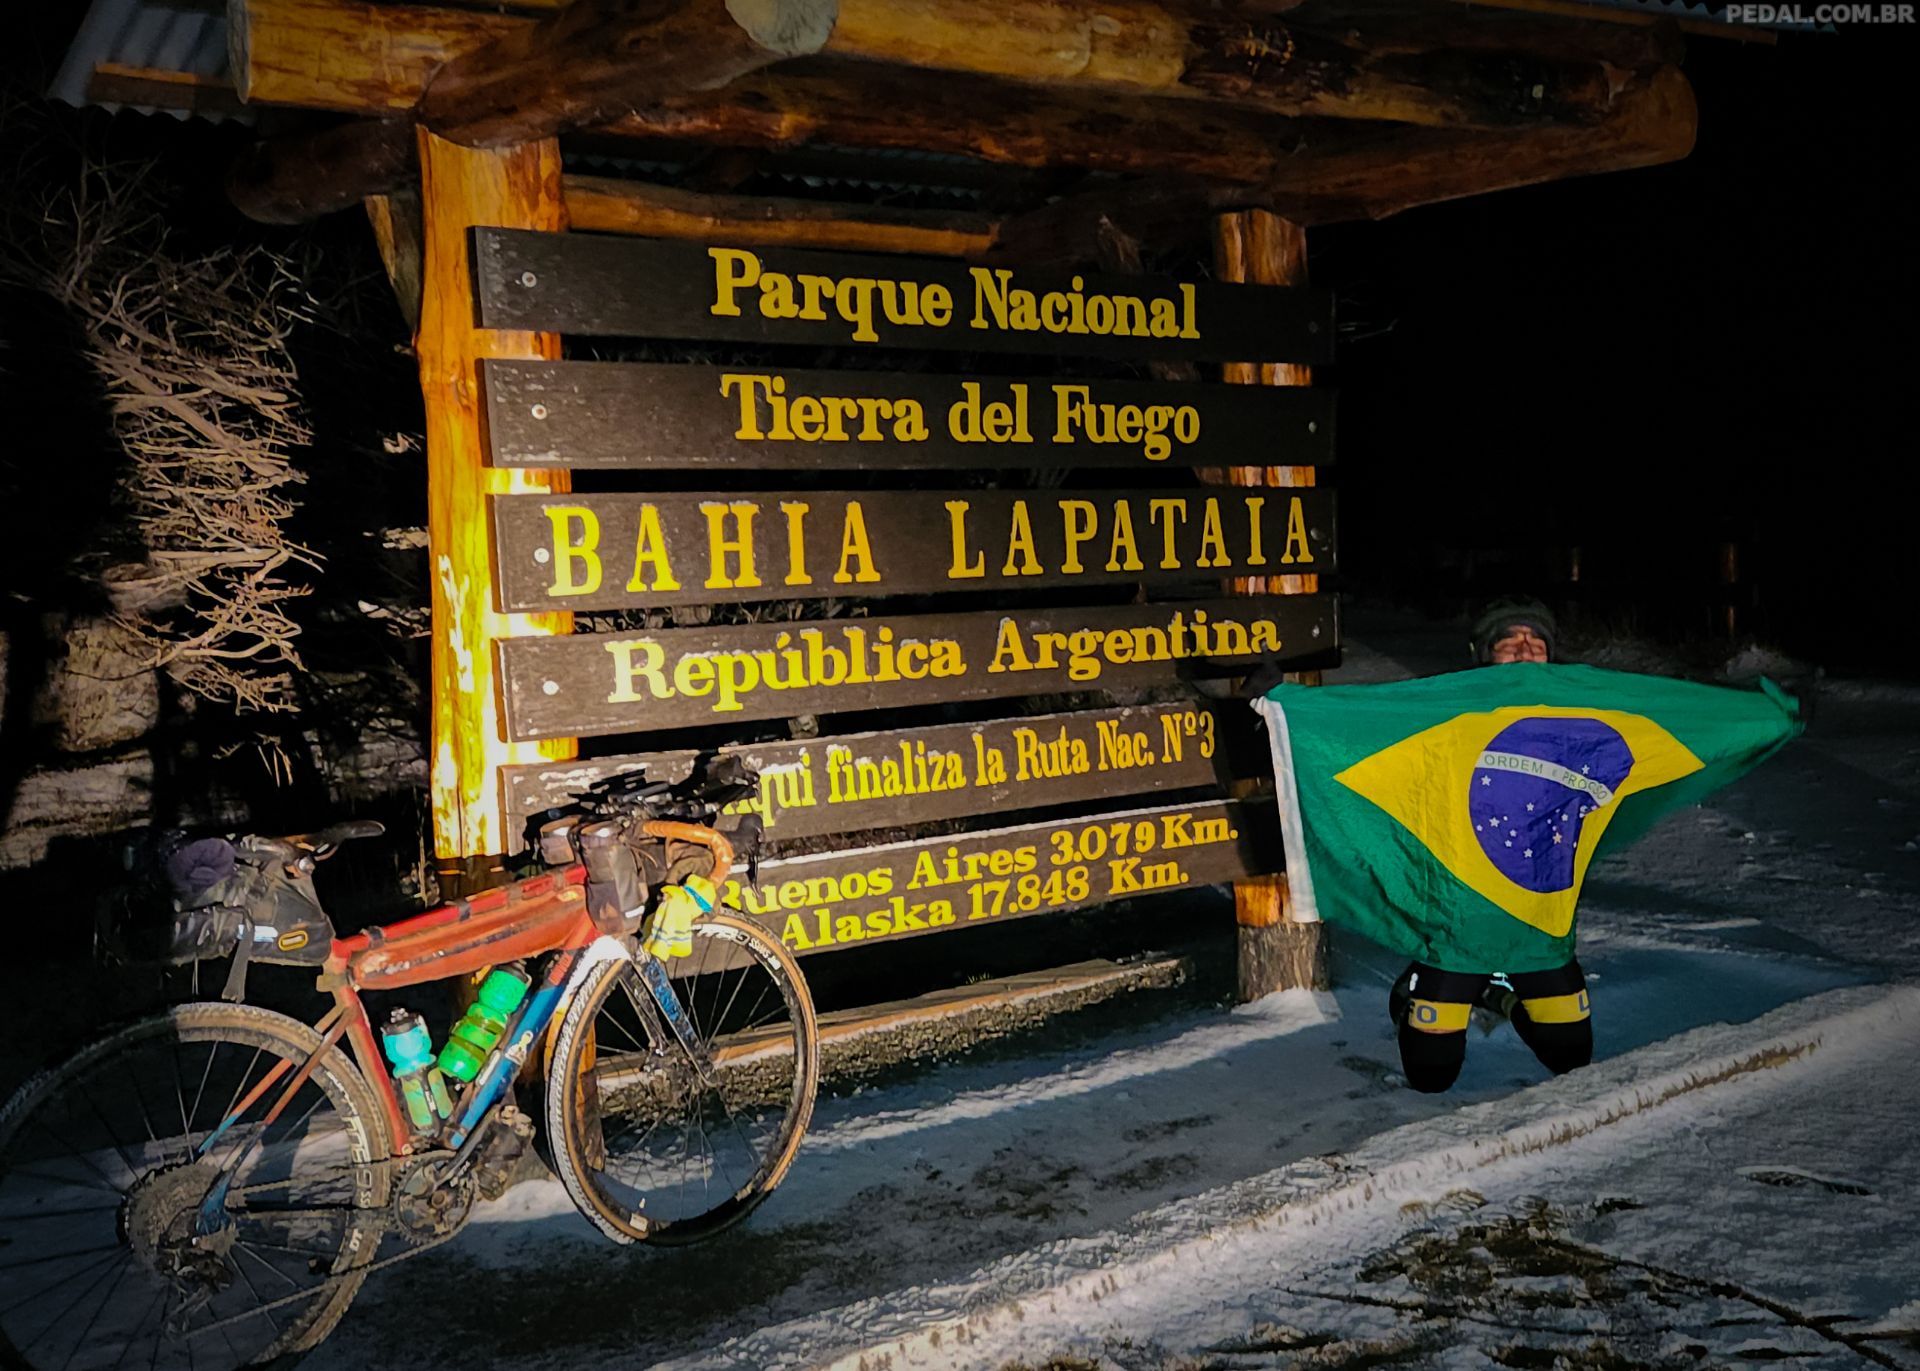 Brasileiro conquista recorde mundial na épica Travessia das Américas de bicicleta sem suporte